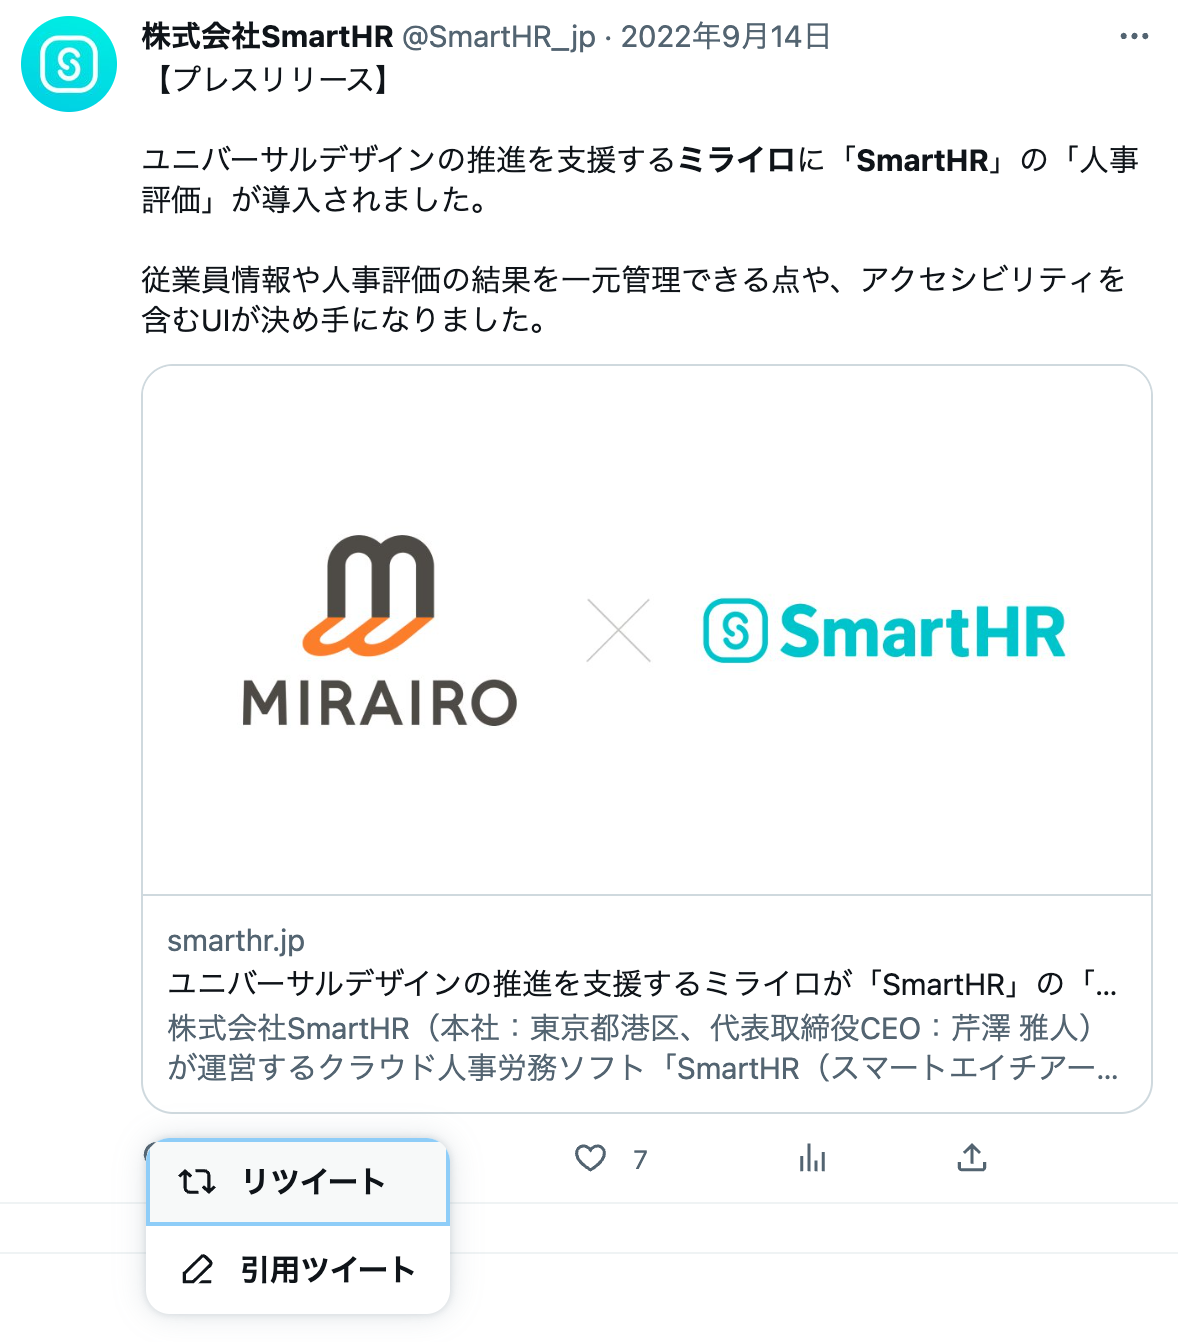 図4 スクリーンショット：Twitterで記事を単純にリツイートしようとする例。ツイートは株式会社SmartHR @SmartHR_jpのもの。「【プレスリリース】ユニバーサルデザインの推進を支援するミライロに「SmartHR」の「人事評価」が導入されました。従業員情報や人事評価の結果を一元管理できる点や、アクセシビリティを含むUIが決め手になりました。」
